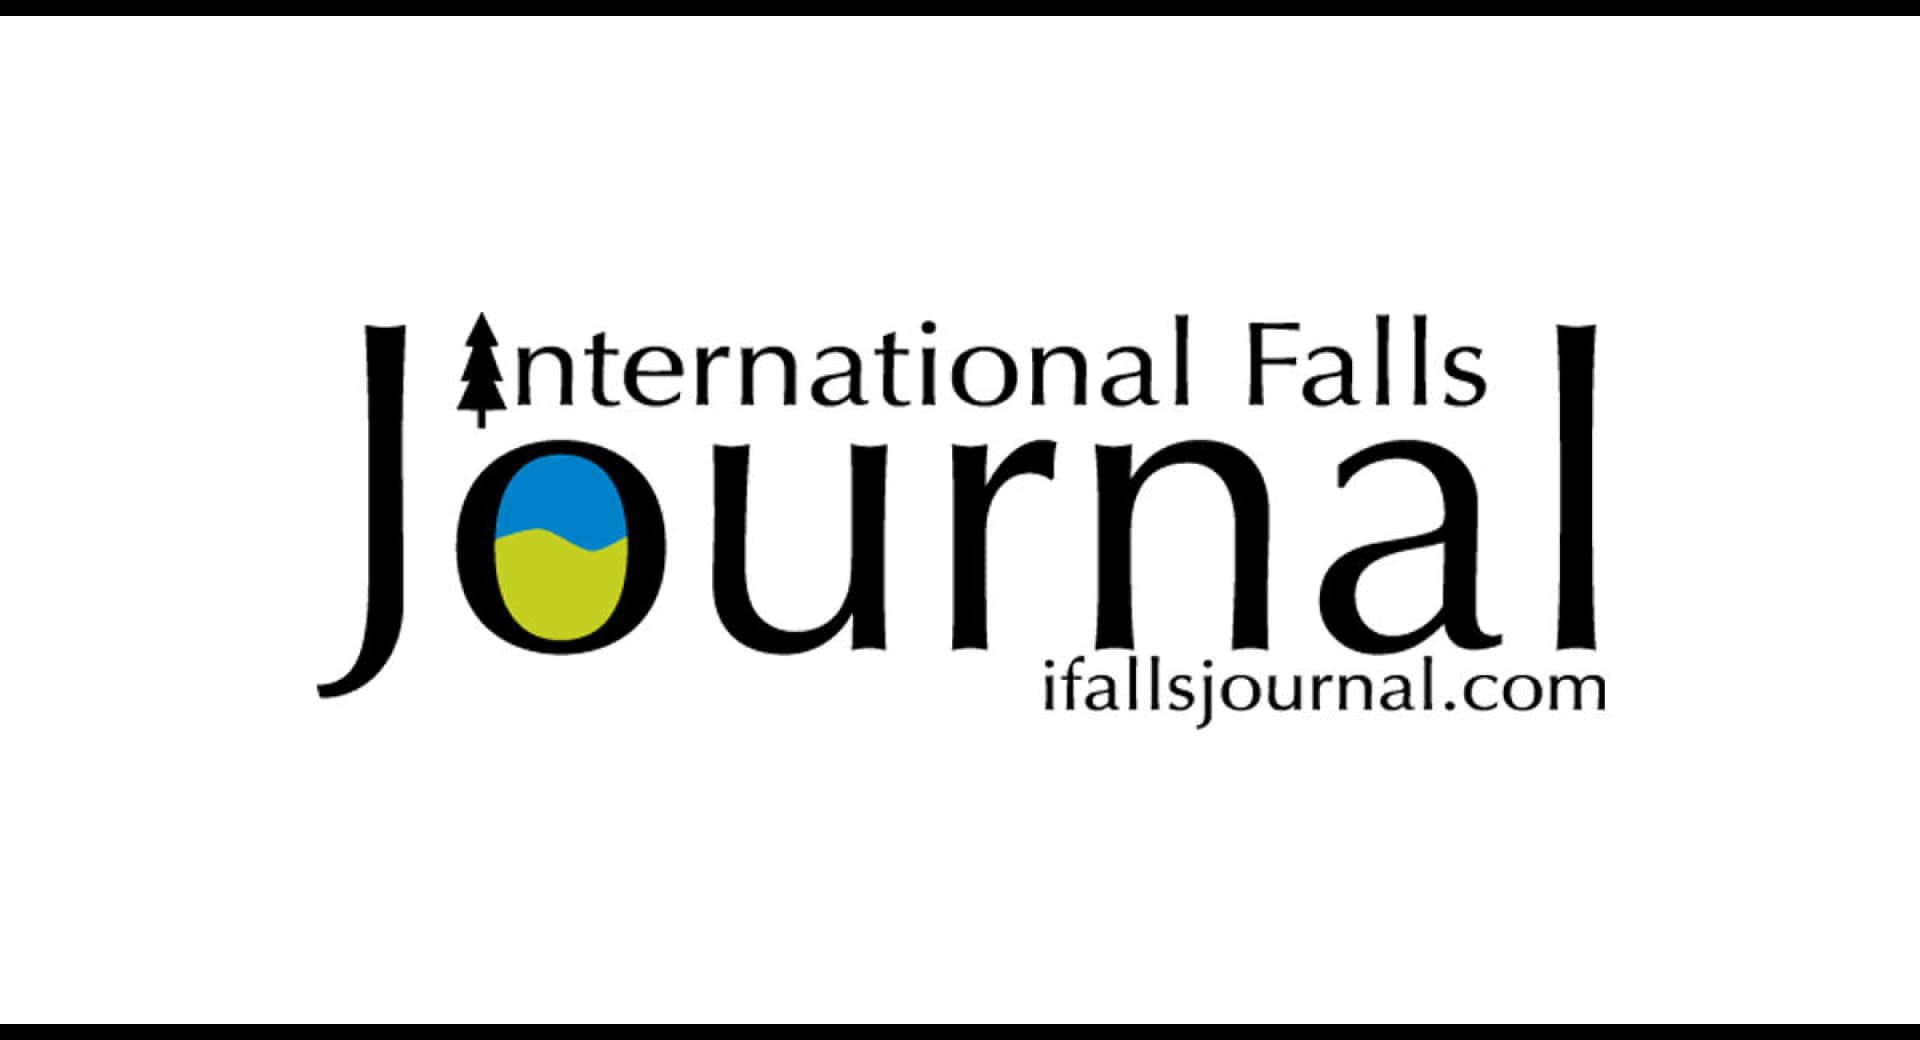 International Falls Journal - 